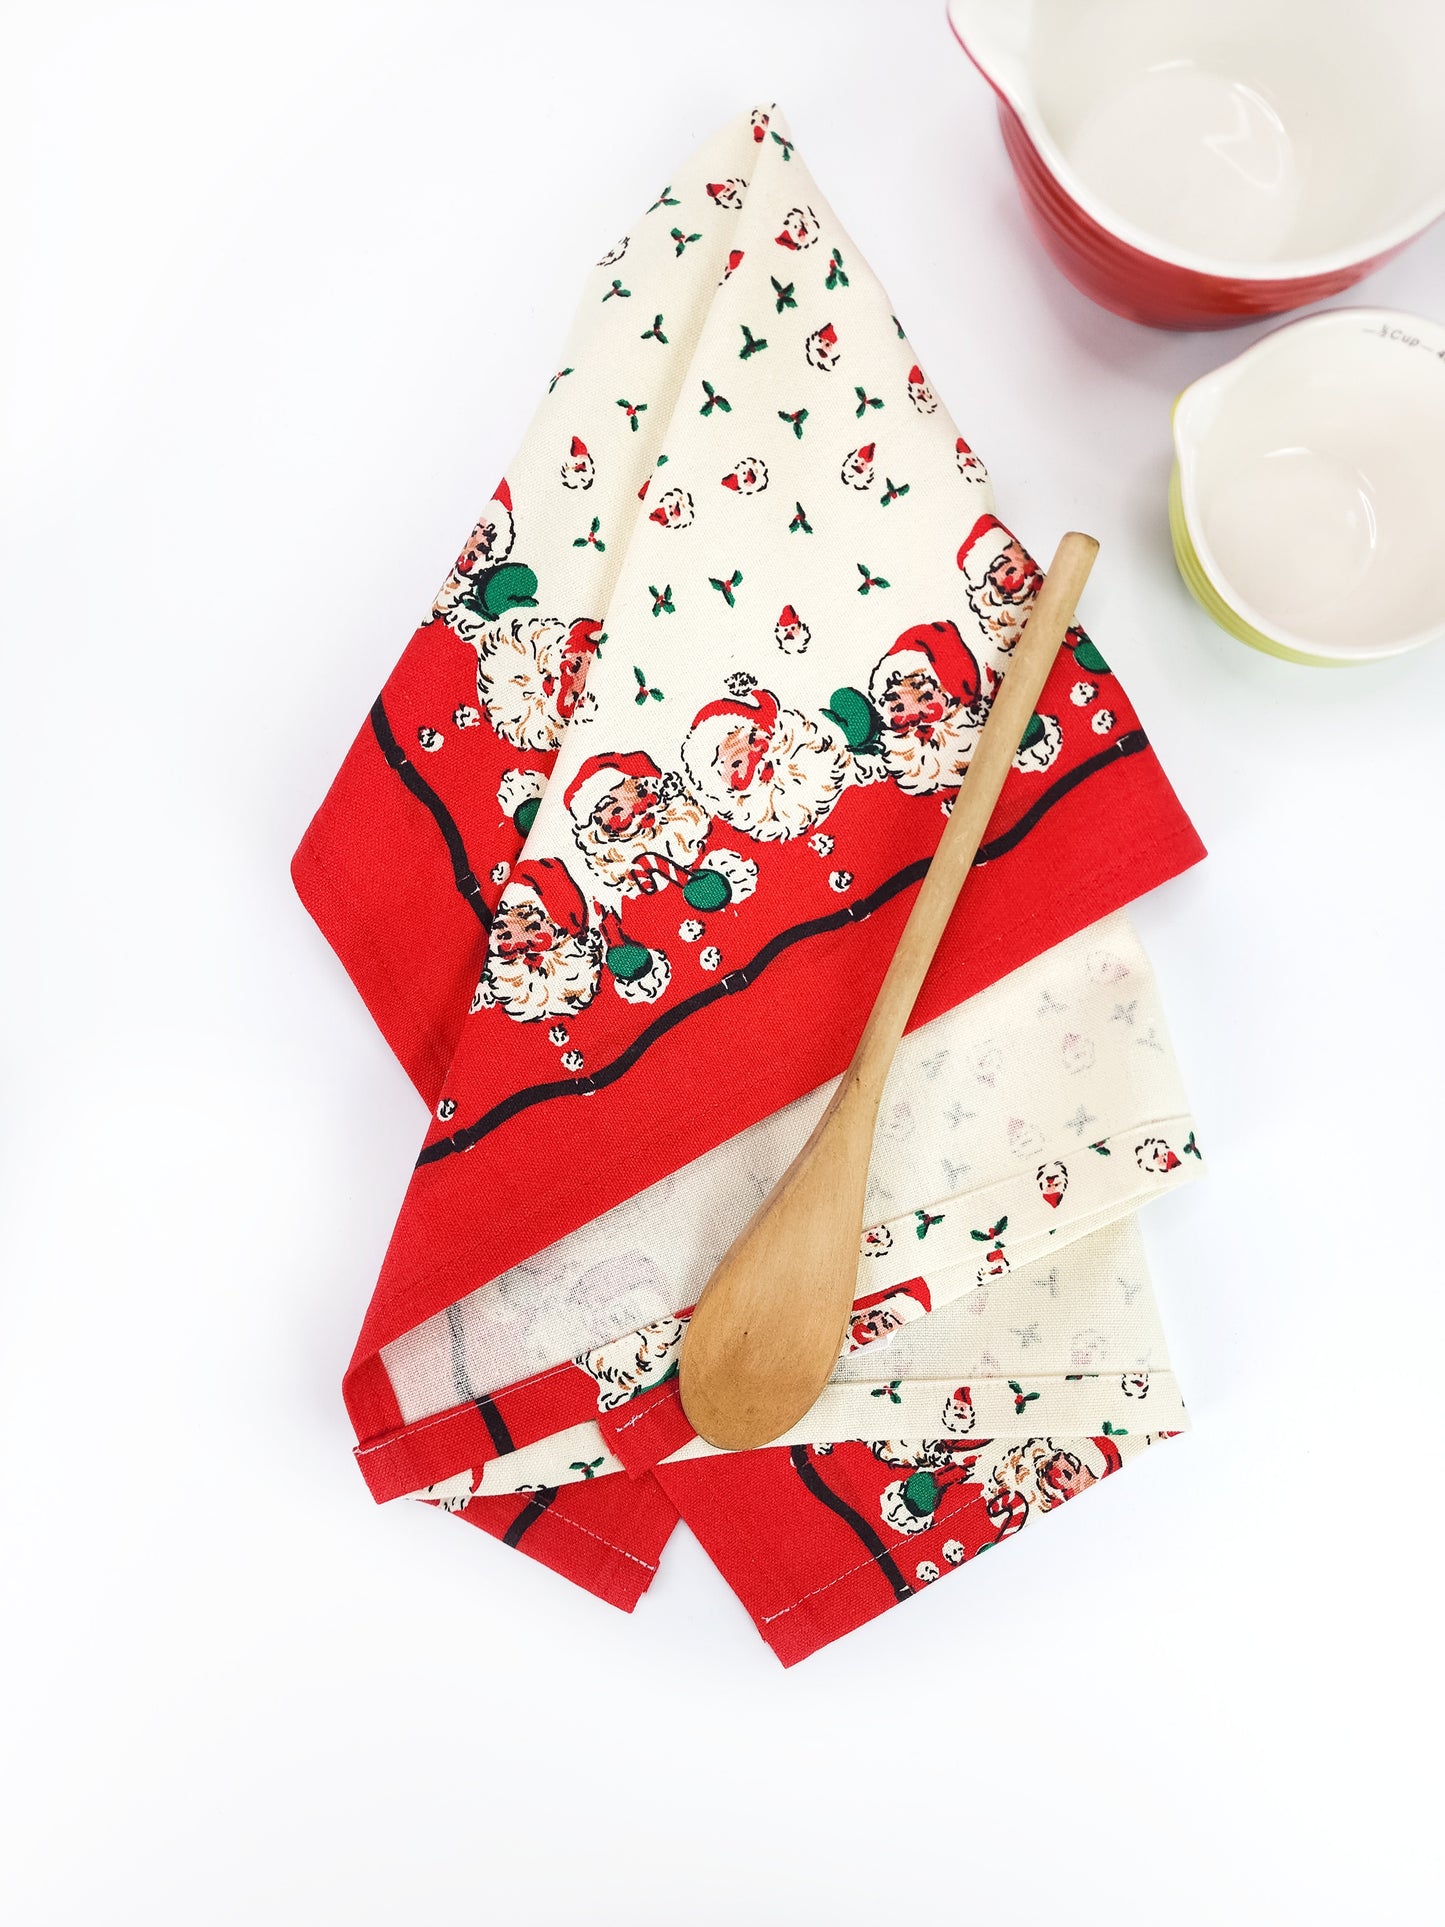 Vintage Inspired Santa Towel